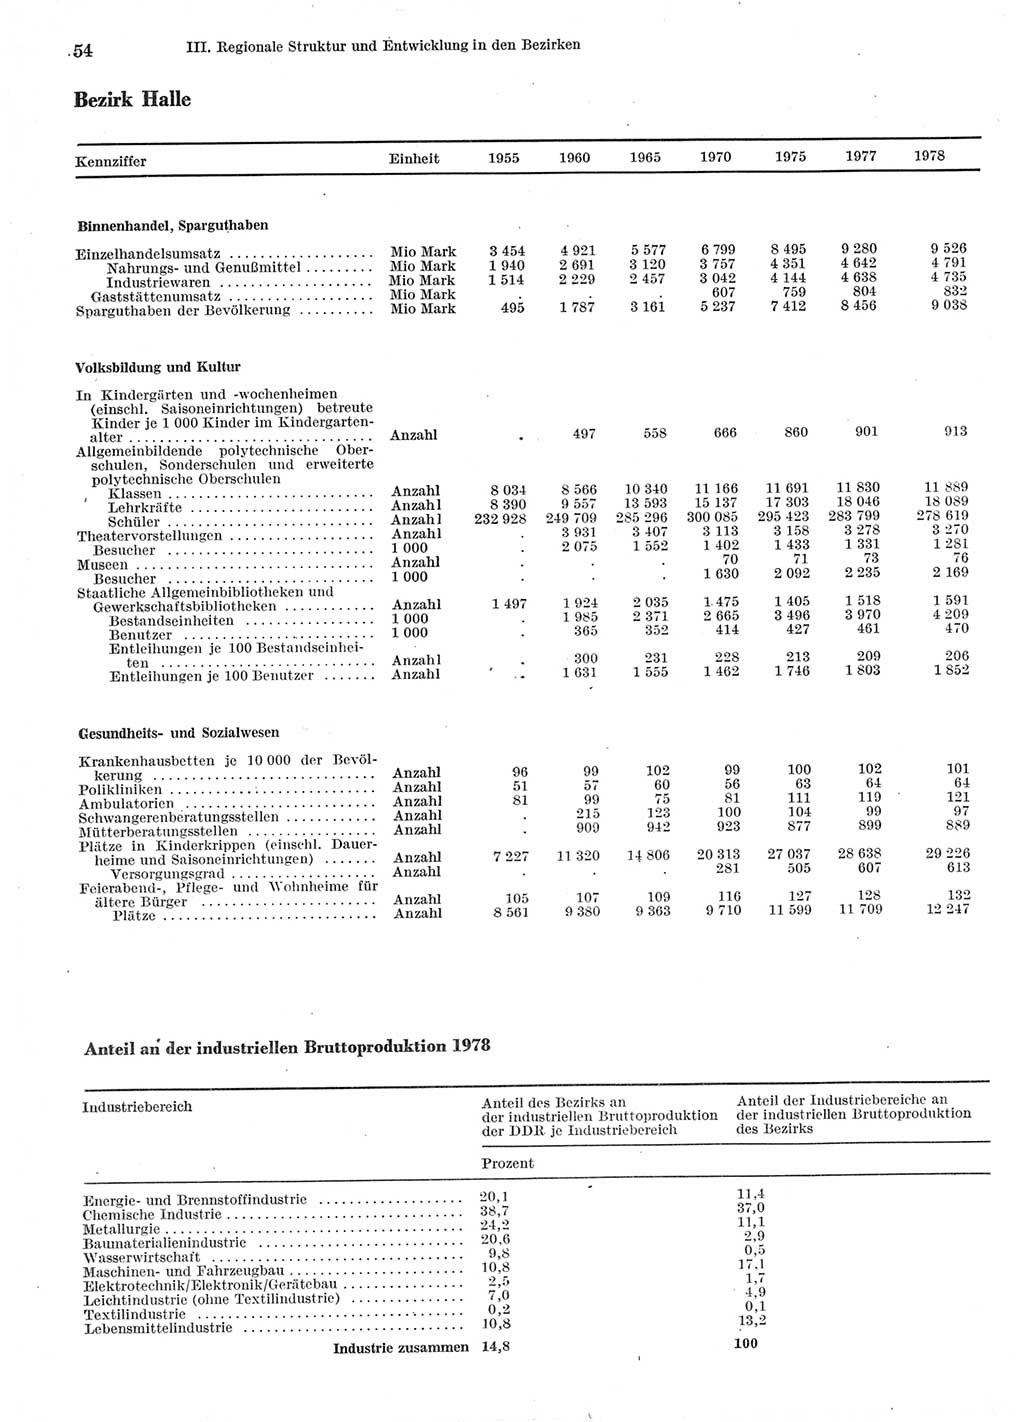 Statistisches Jahrbuch der Deutschen Demokratischen Republik (DDR) 1979, Seite 54 (Stat. Jb. DDR 1979, S. 54)